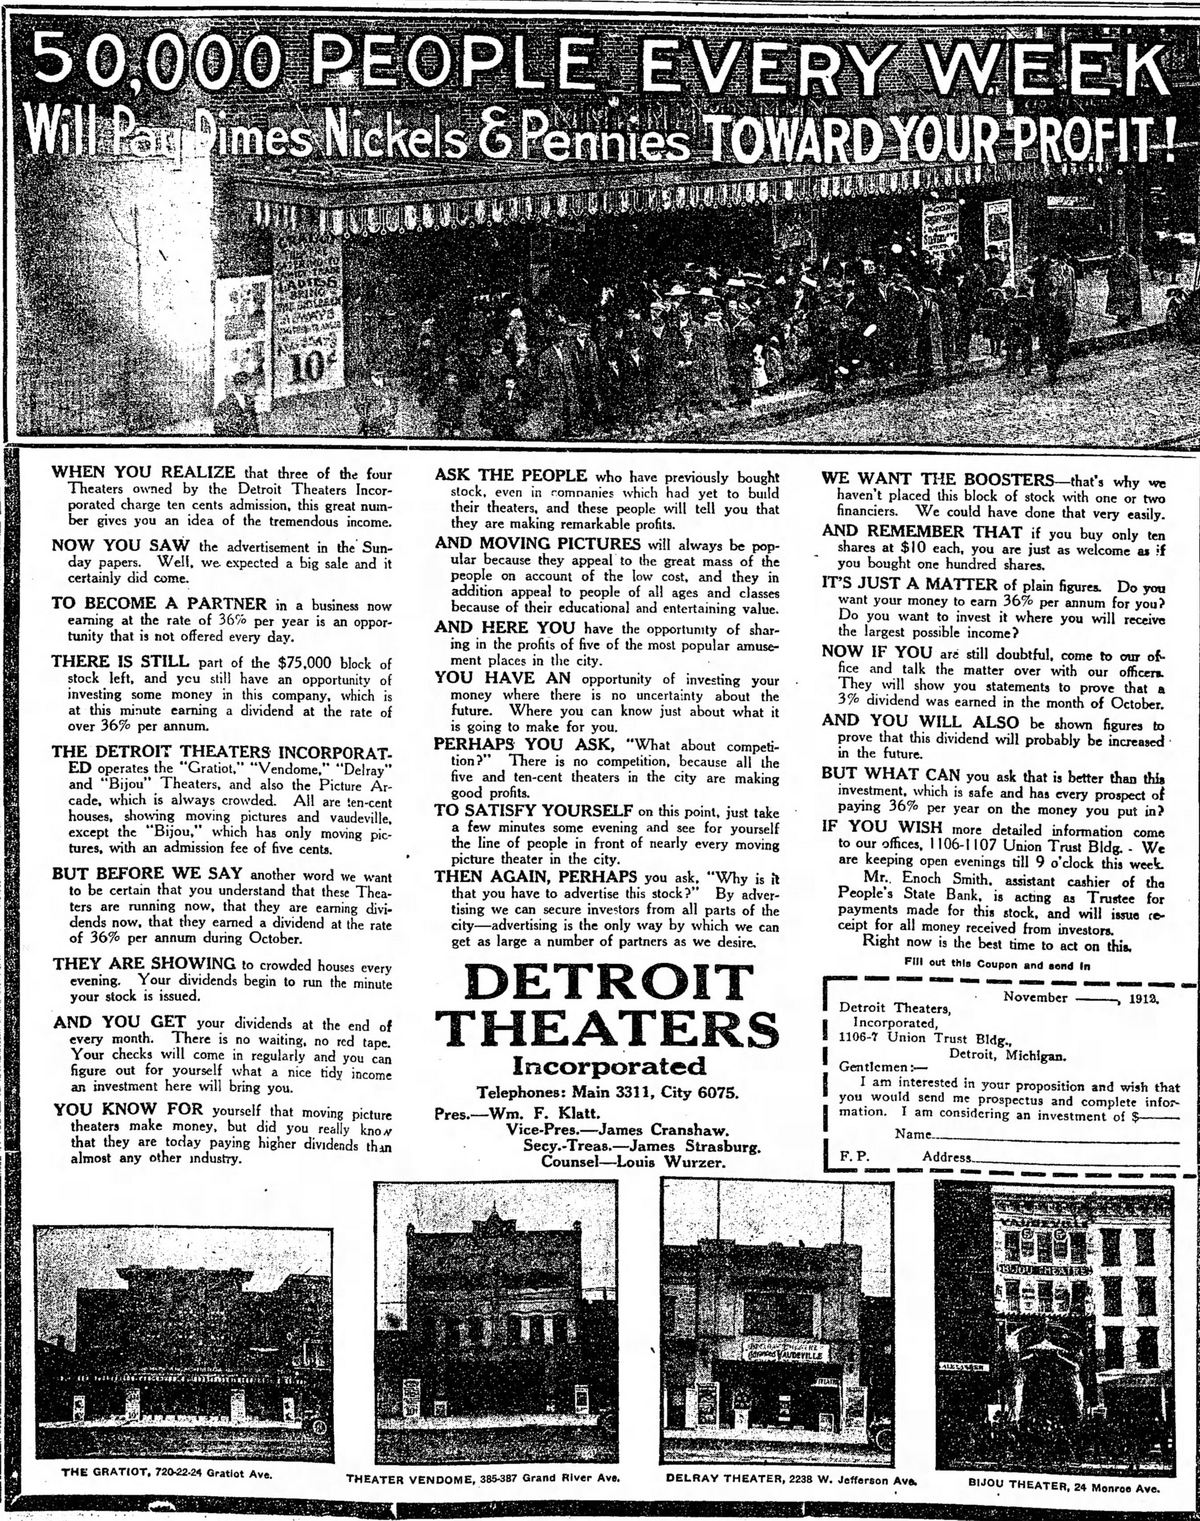 Vendome Theatre - November 1912 Ad (newer photo)